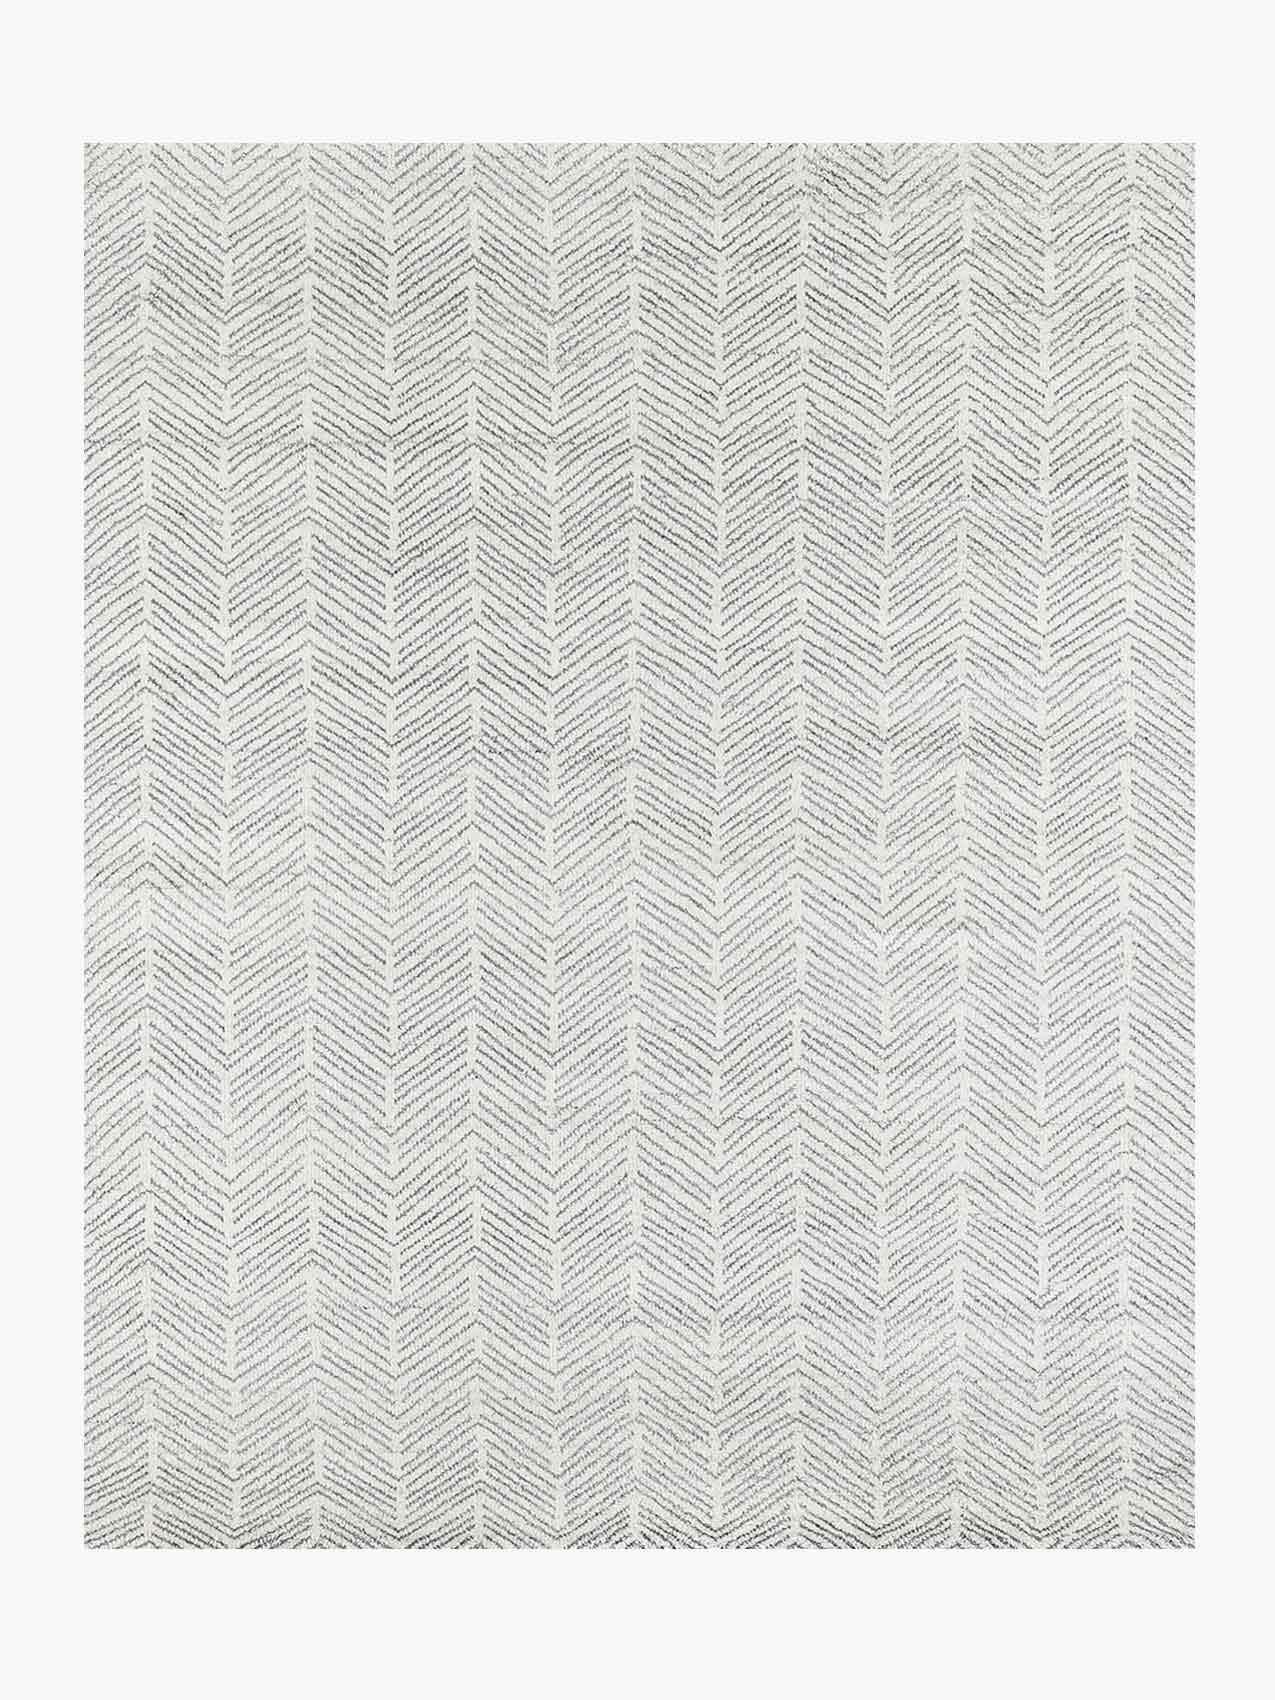 For Sale: White (White/Silver) Ben Soleimani Alia Rug– Hand-woven Chevron Wool + Viscose Black/Gray 10'x14'